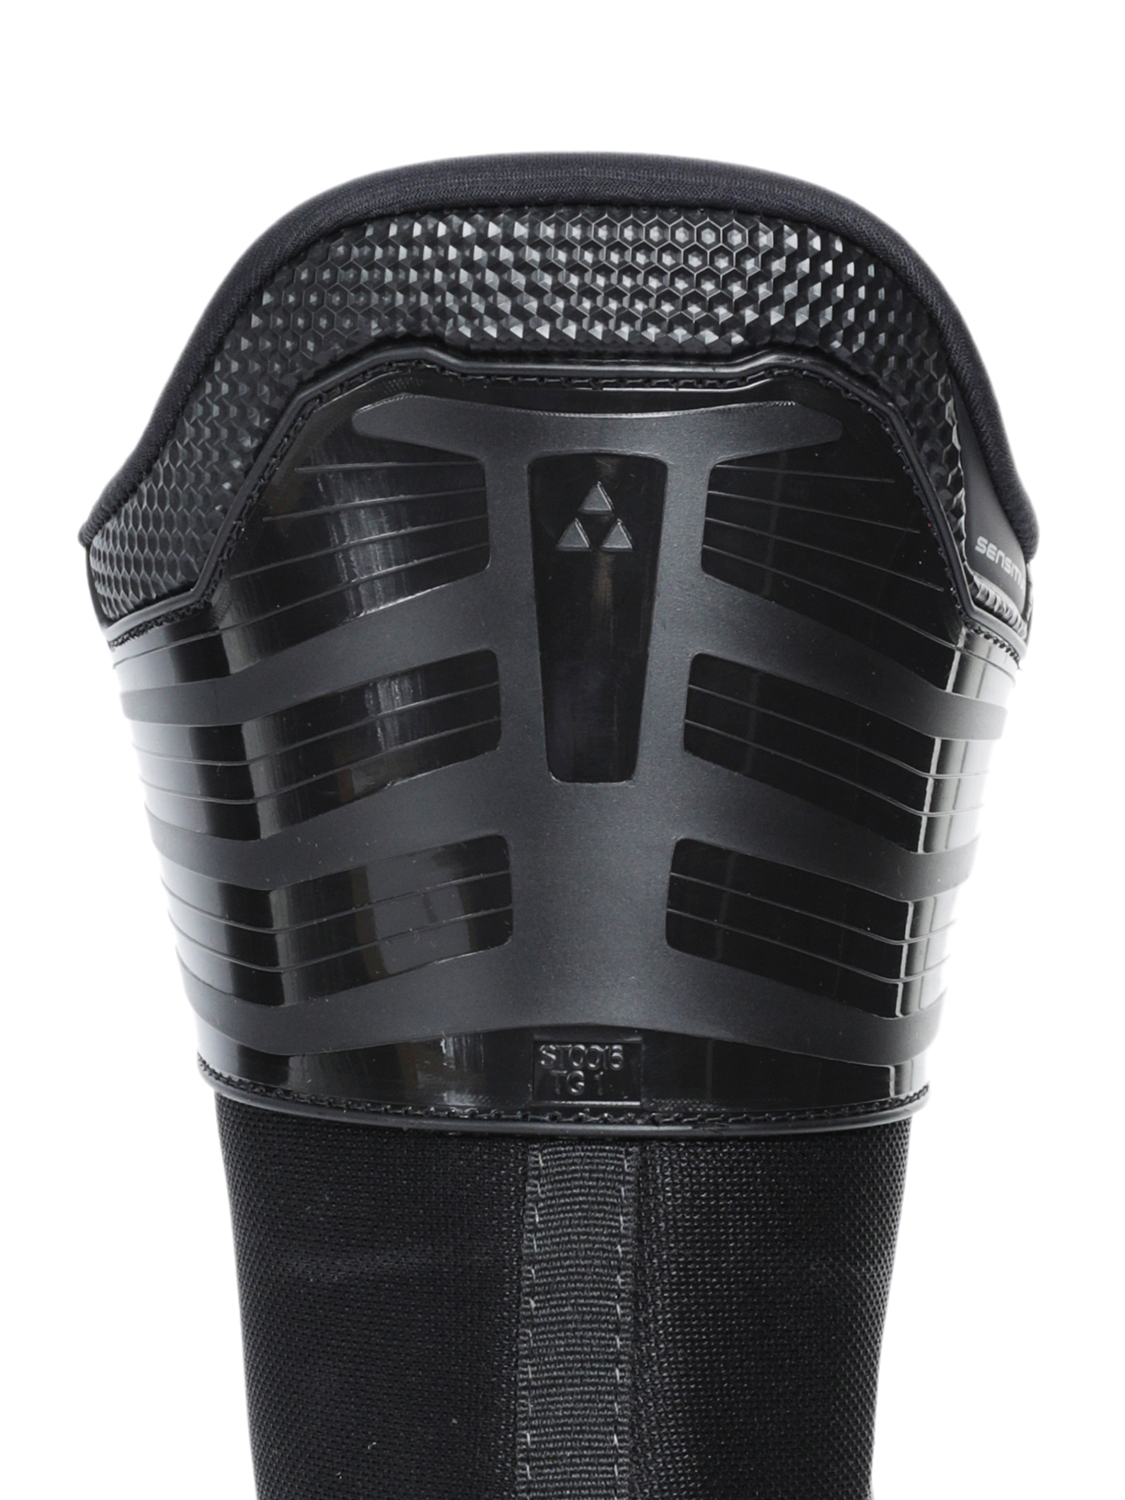 Горнолыжные ботинки FISCHER Rc4 60 Jr Black